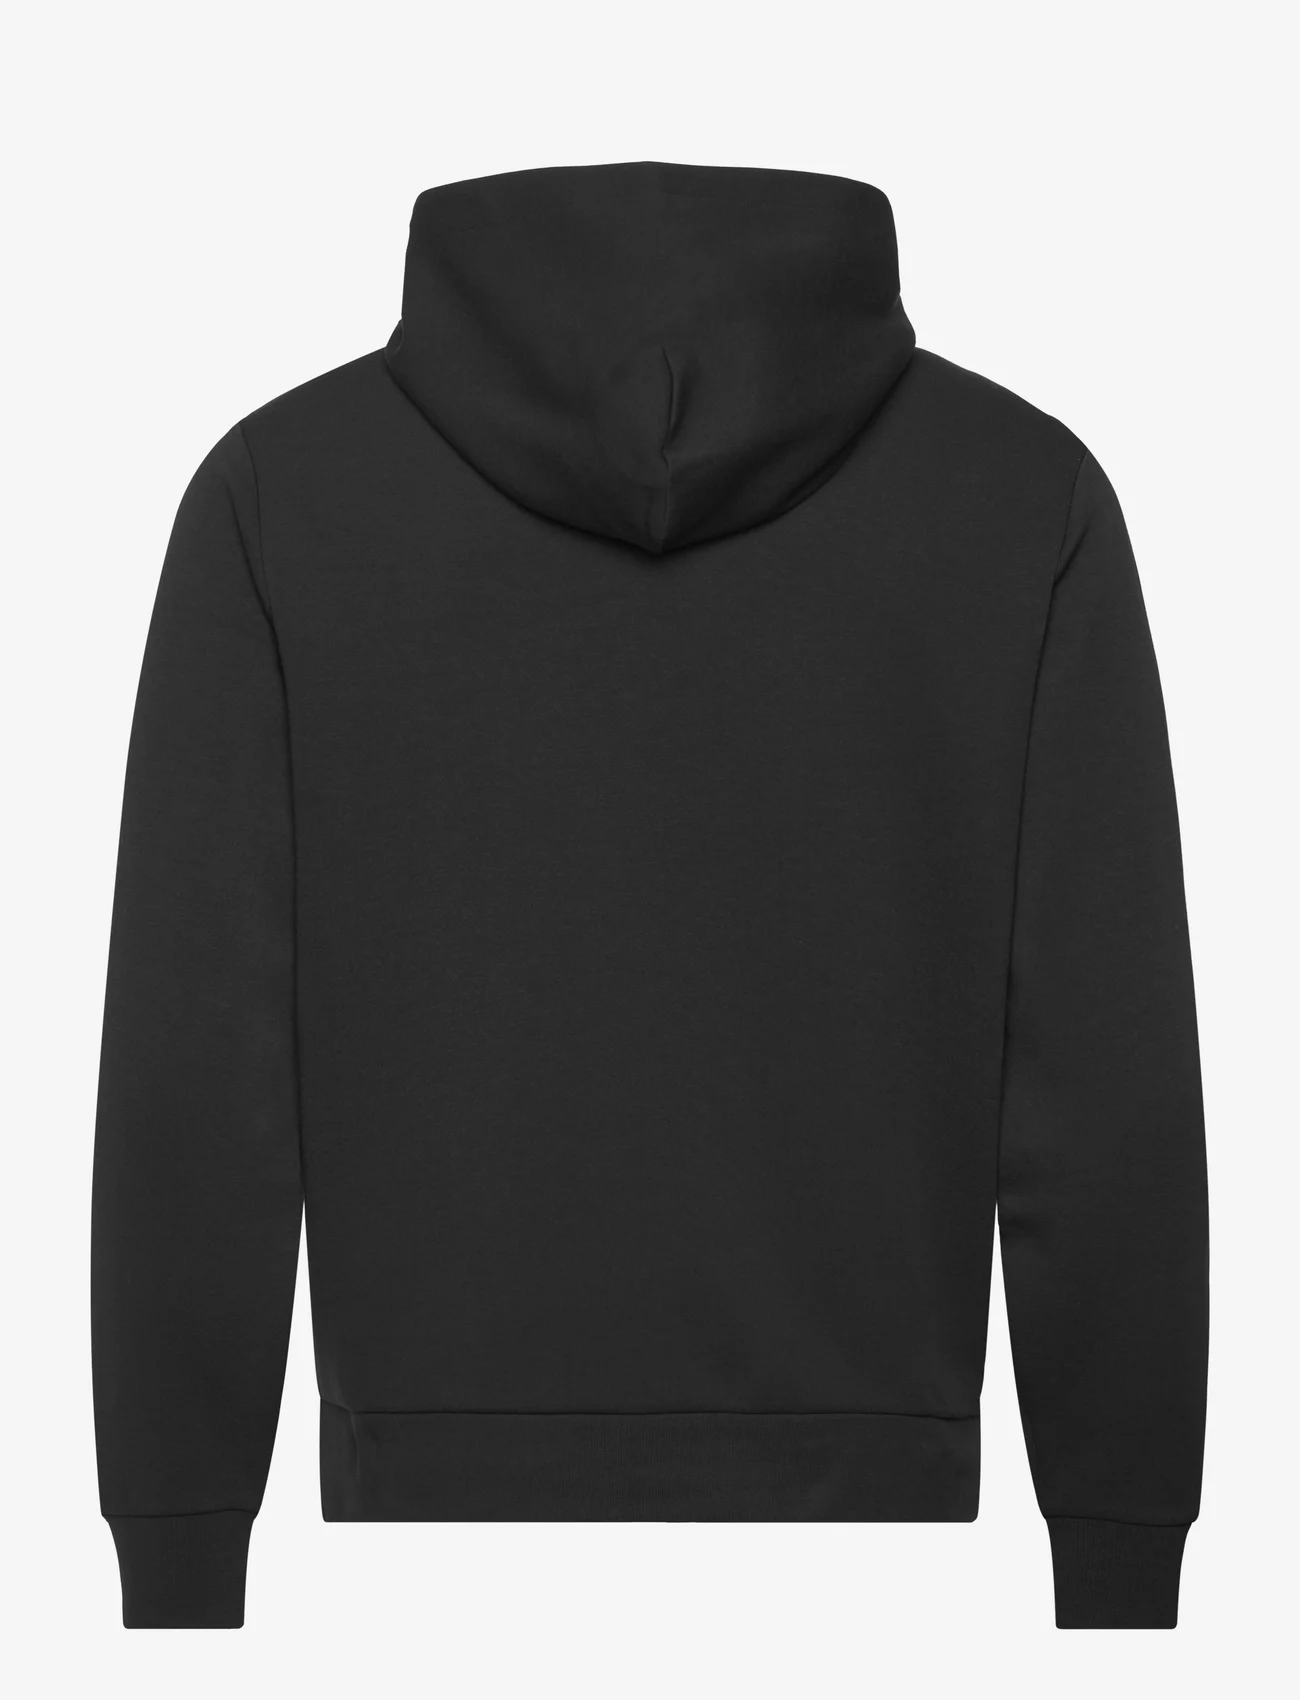 Calvin Klein - MICRO LOGO REPREVE HOODIE JACKET - sweatshirts - ck black - 1